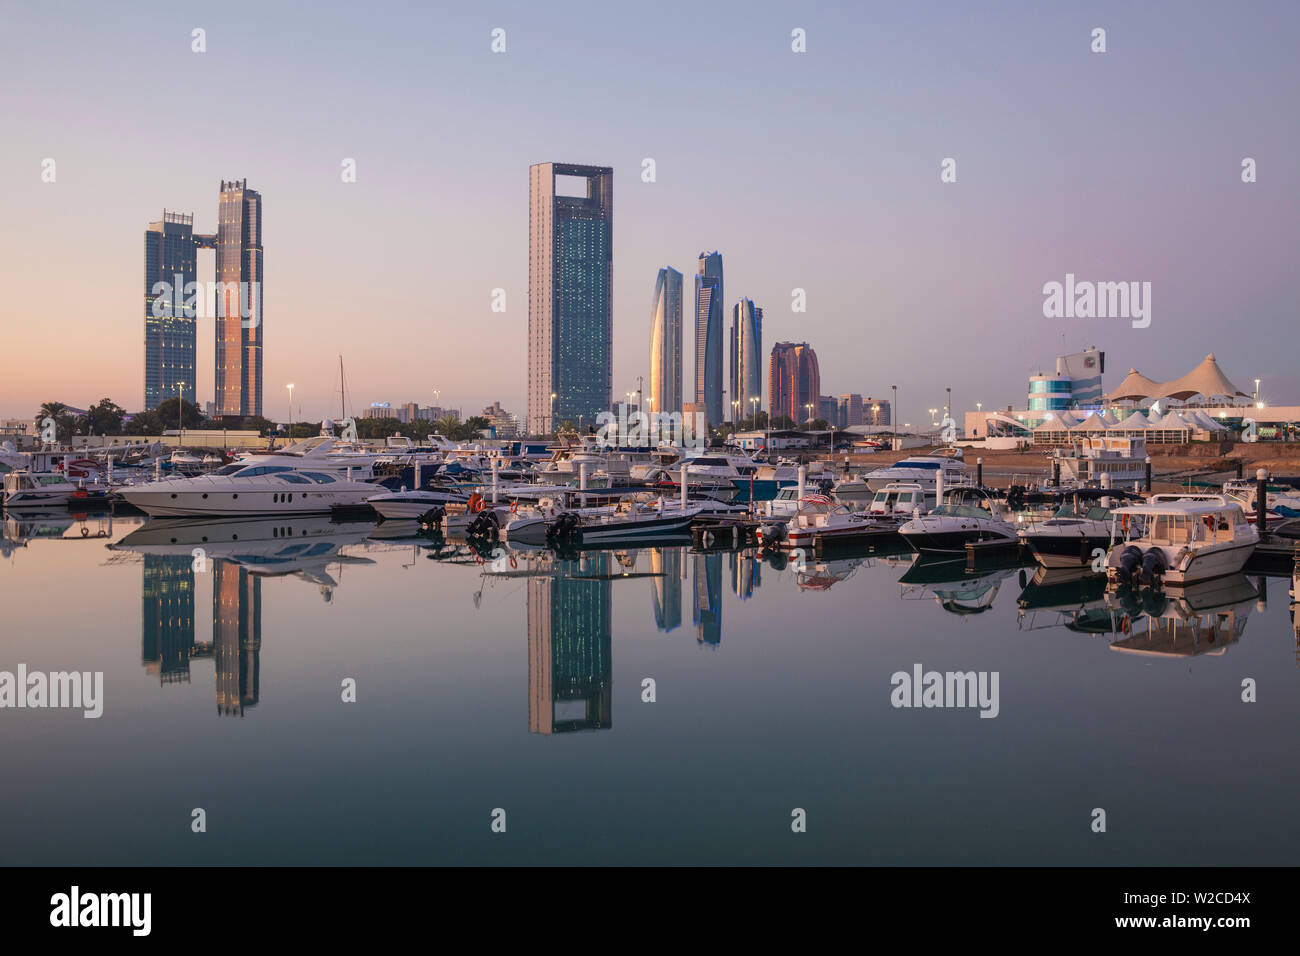 Emirats arabes unis, Abu Dhabi, vue sur la marina et sur les toits de la ville à la direction St Regis Hotel, Abu Dhabi National Oil Company siège, Etihad Towers, le Royal Rose Hotel et à droite l'Abu Dhabi International Marine Sports Club Banque D'Images